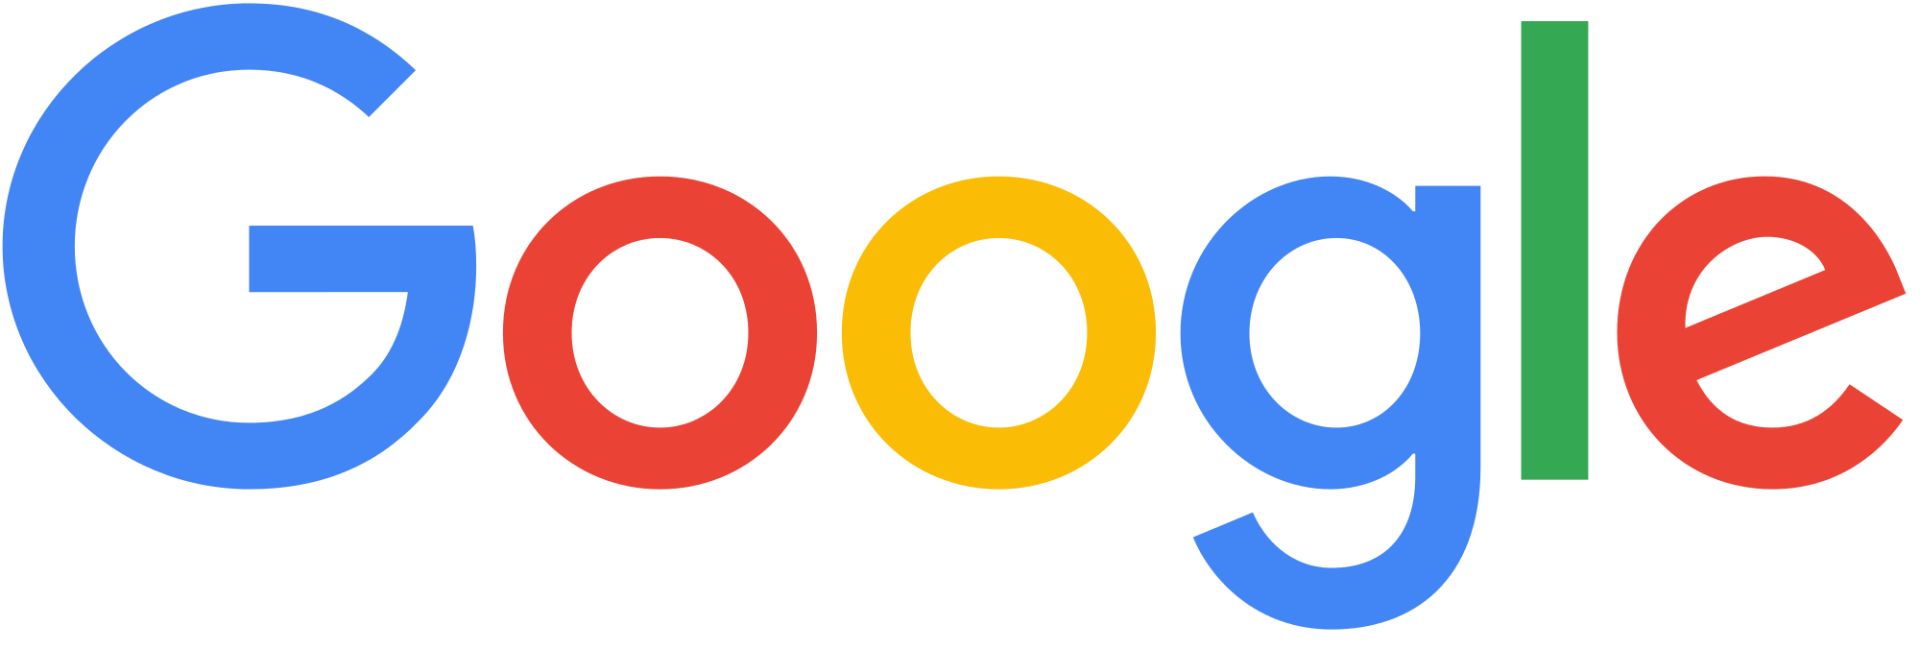 Automatic Garage Door - Google 5 Star Review